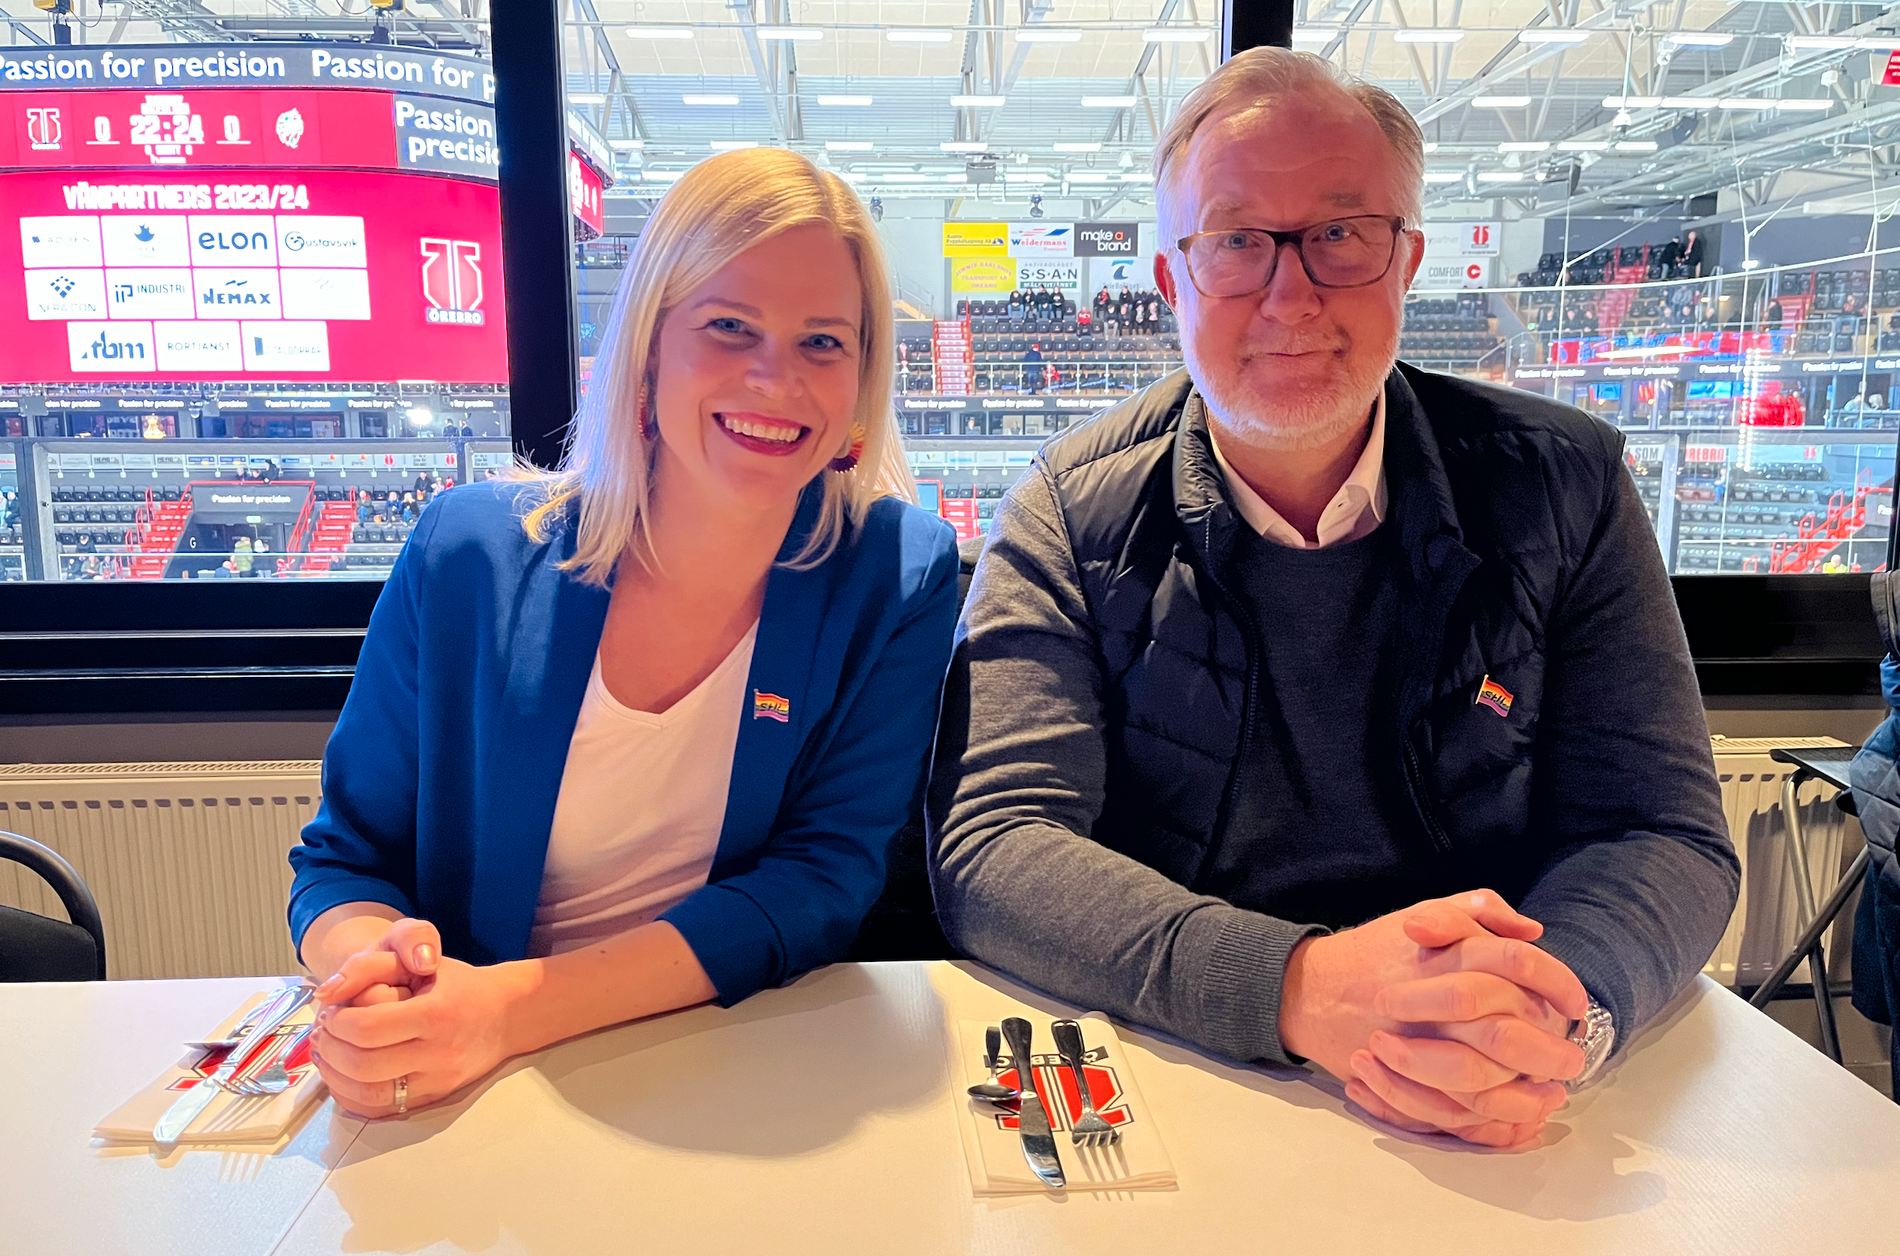 L-ministrarna Johan Pehrson och Paulina Brandberg på plats i Behrn arena i Örebro under SHL Pride Week.